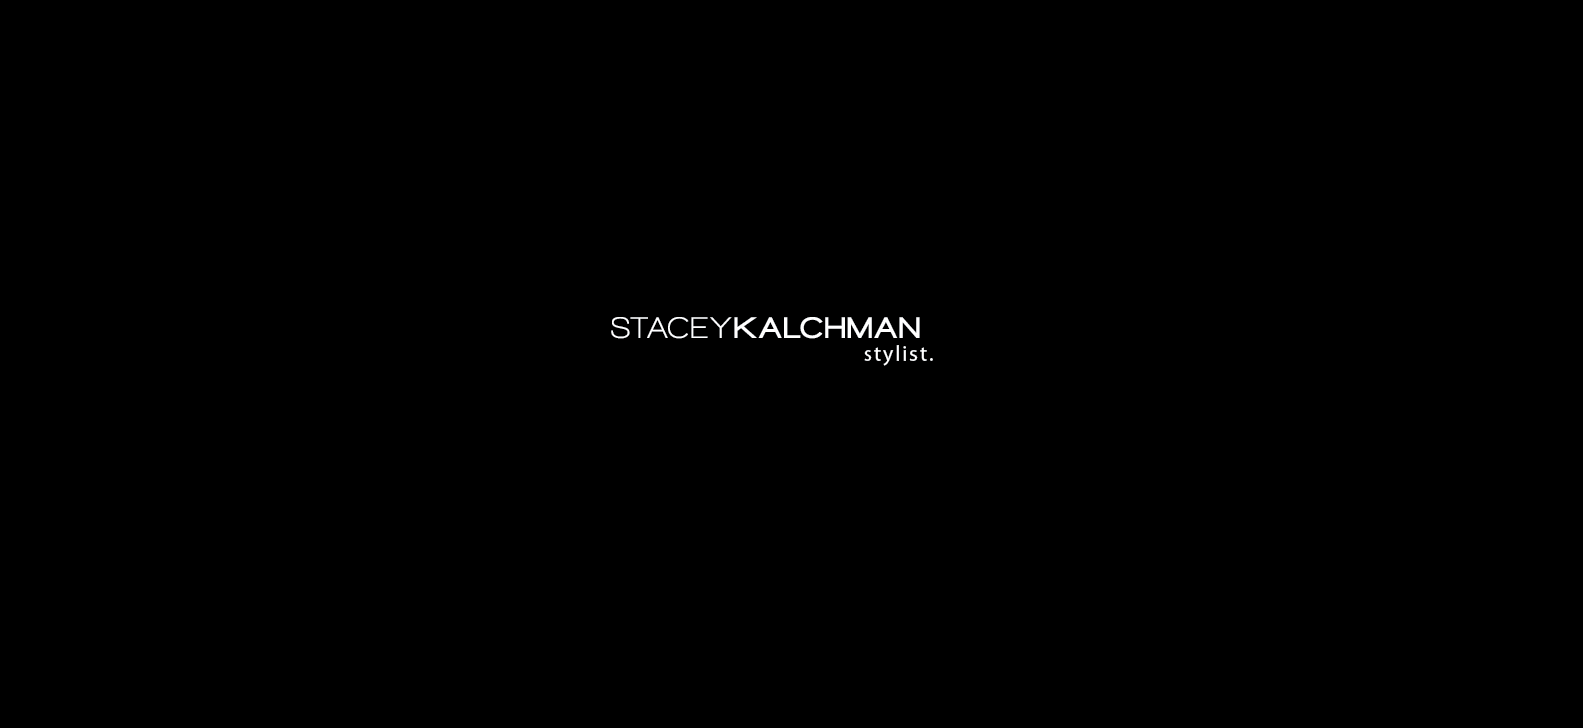 Stacey Kalchman